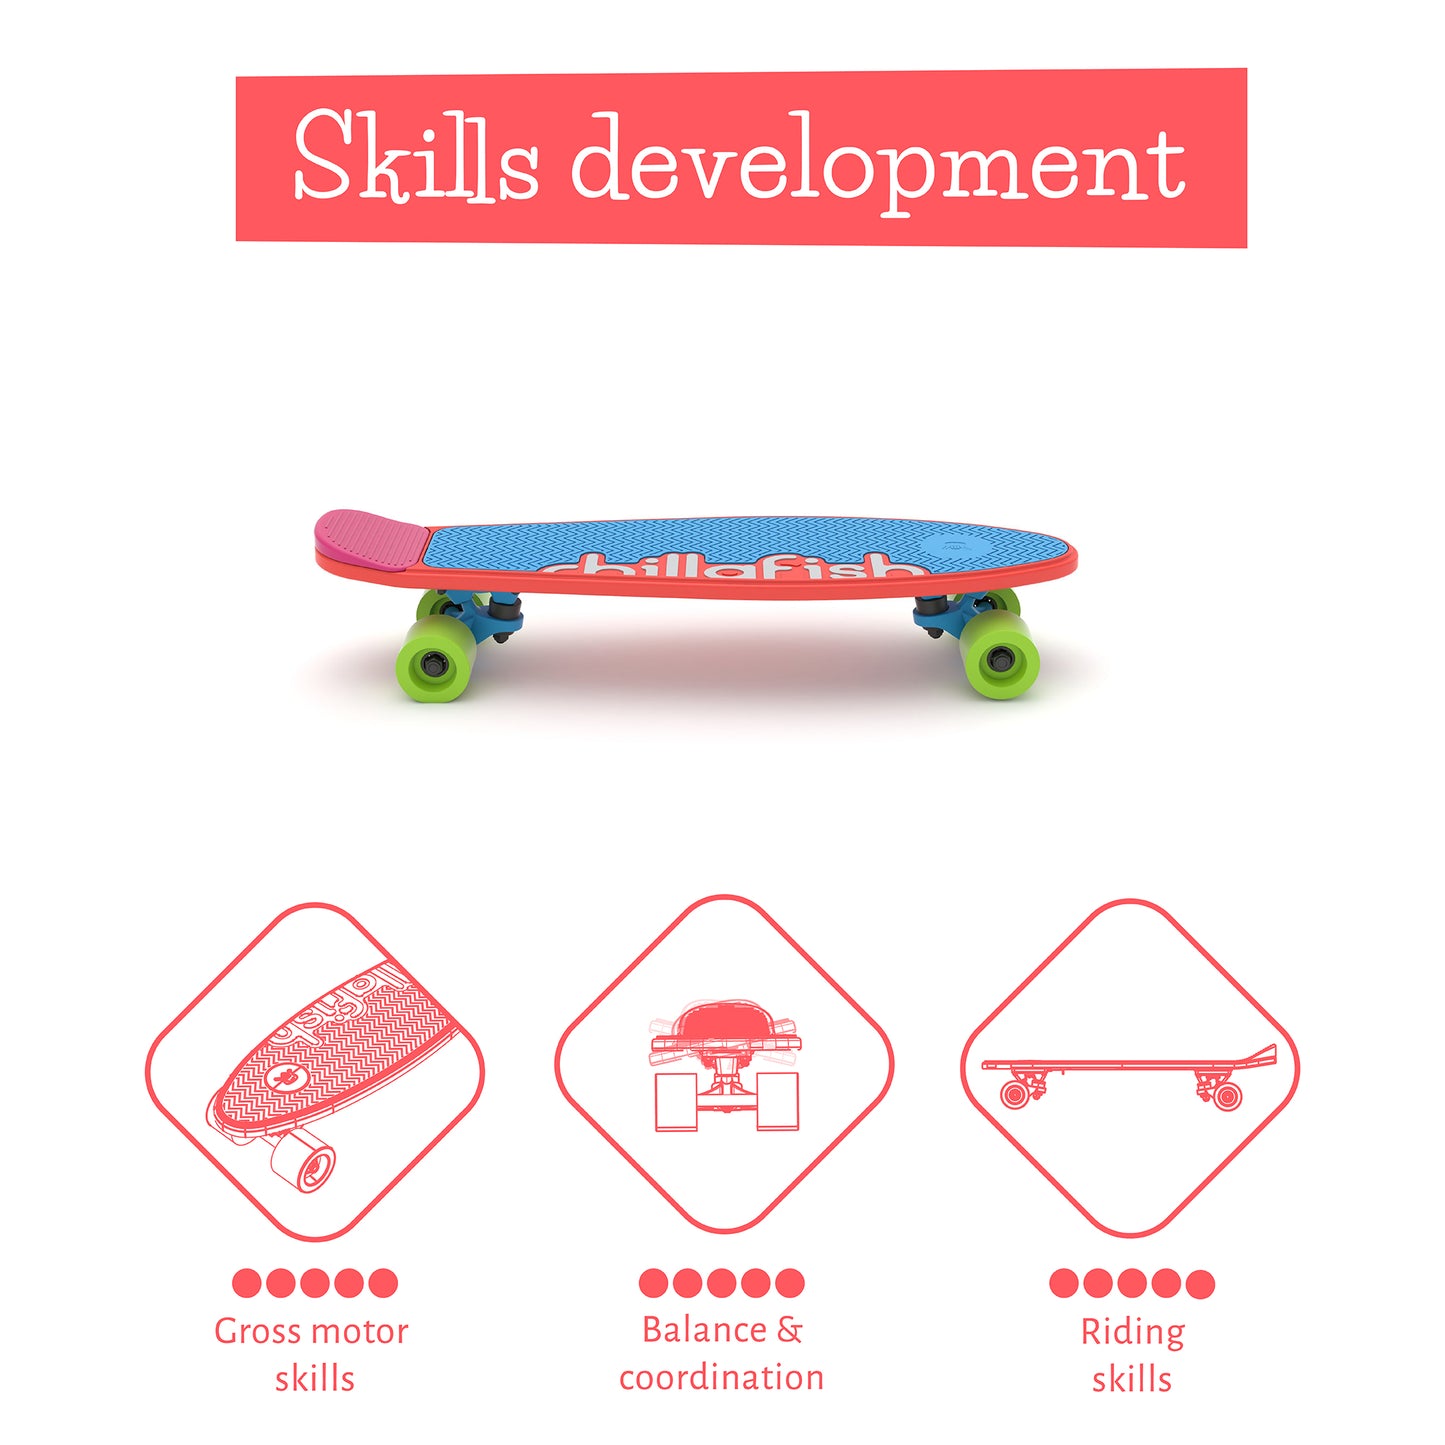 Skatie : Skateboard personnalisable pour les enfants à partir de 3 ans